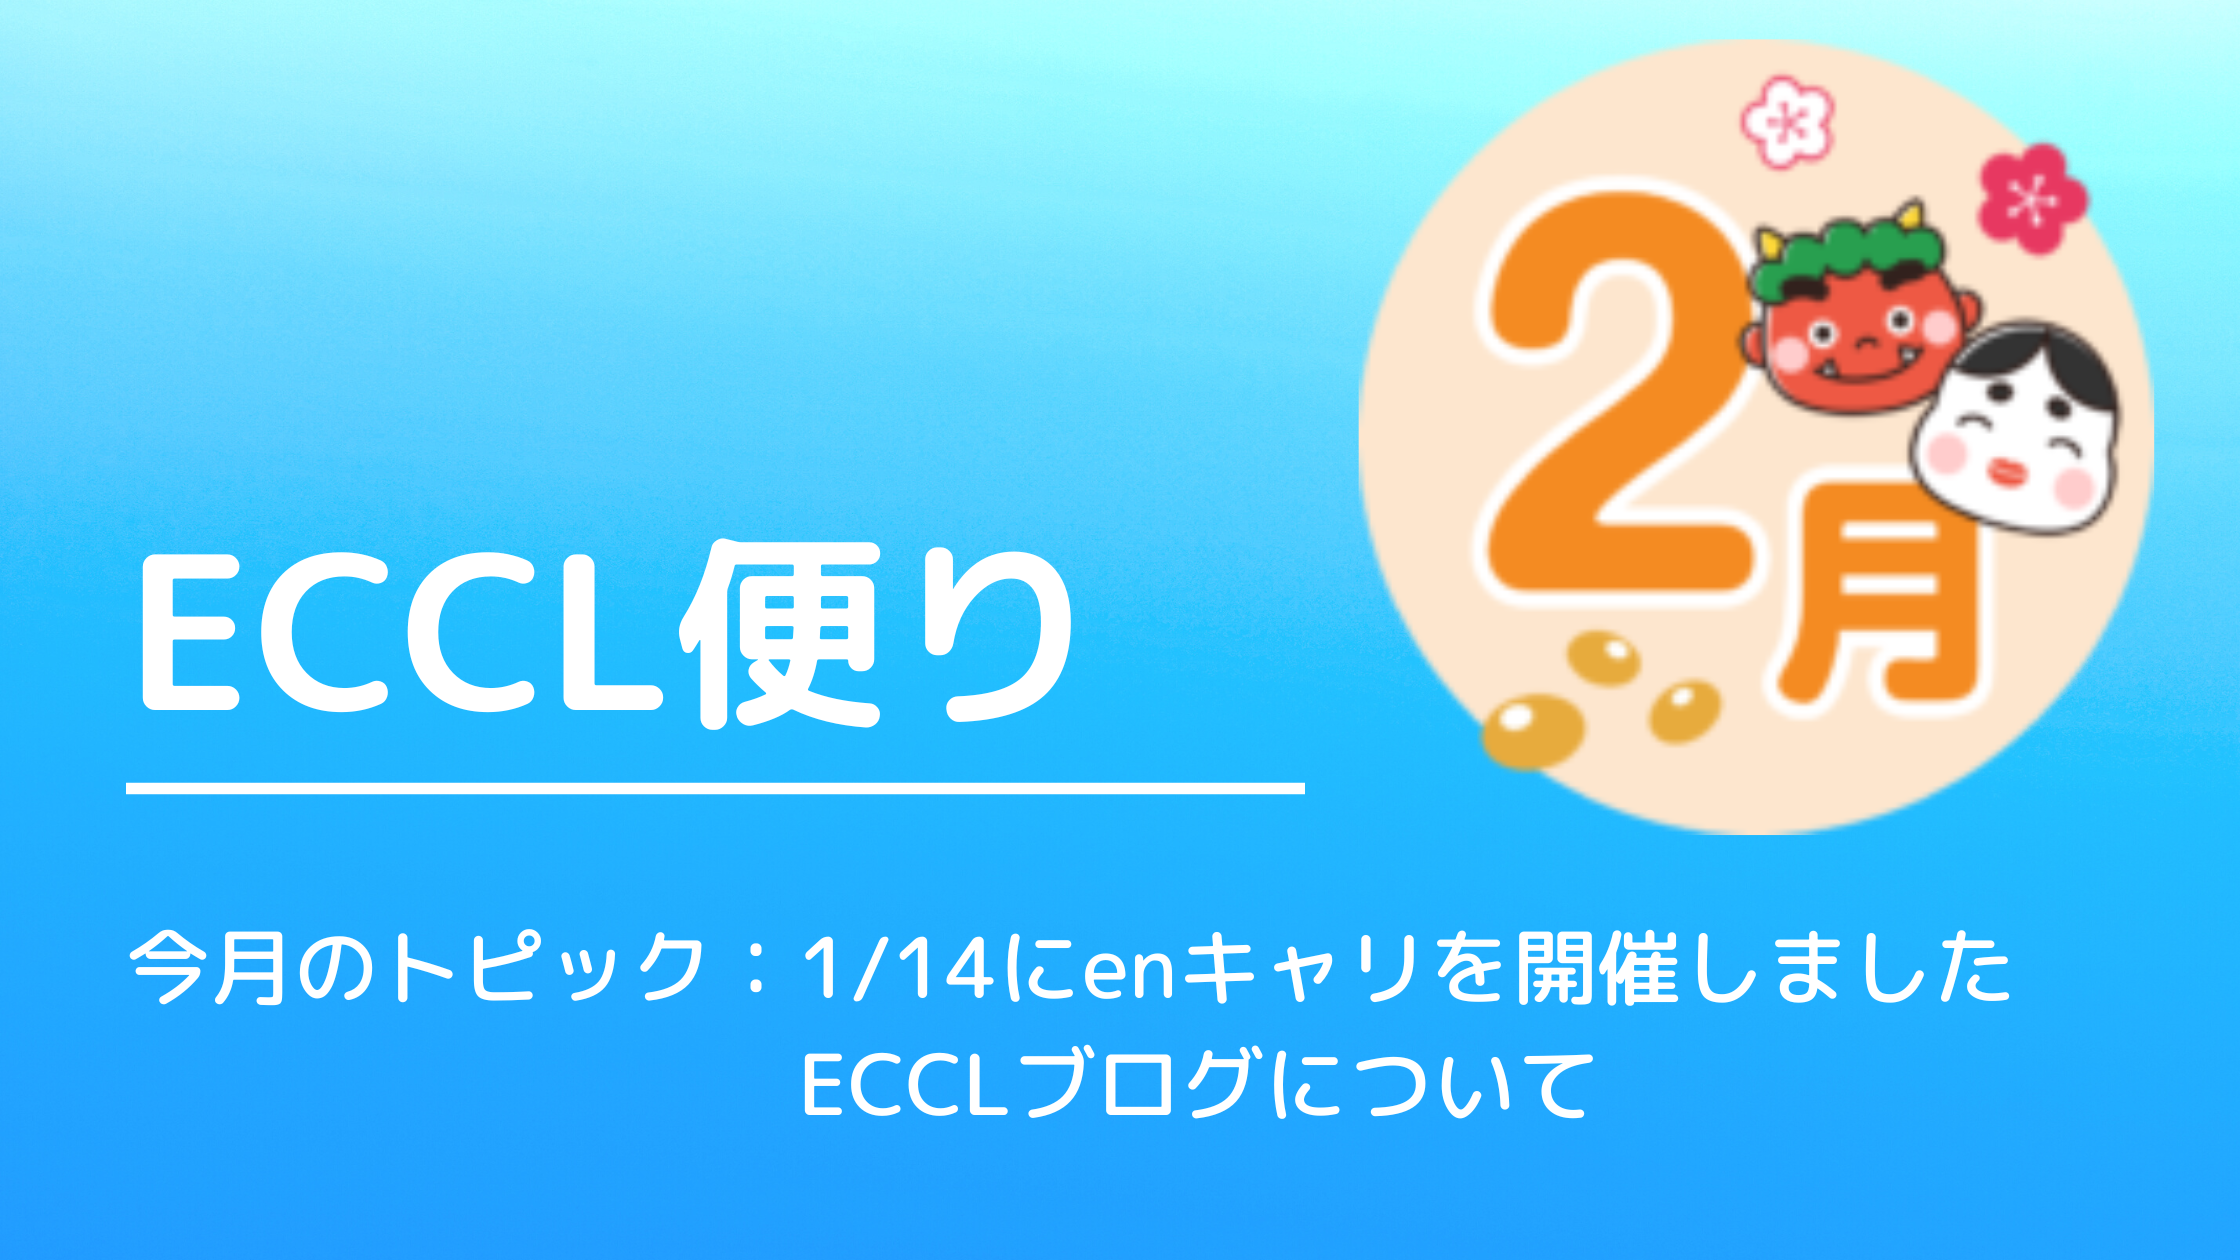 ECCL便り11月号♪